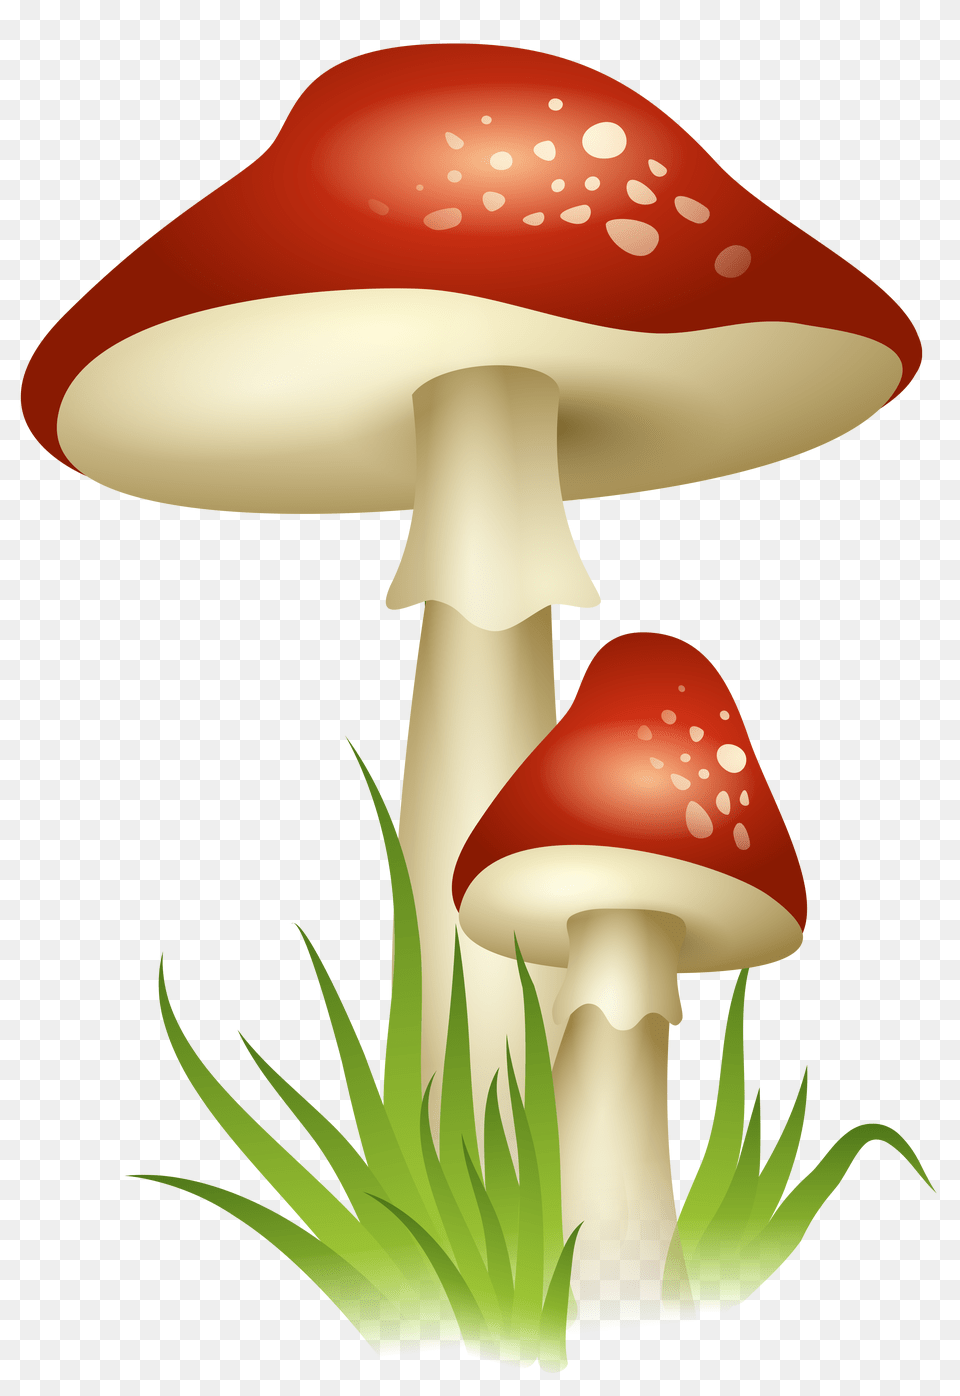 Mushrooms Transparent, Agaric, Amanita, Fungus, Mushroom Png Image